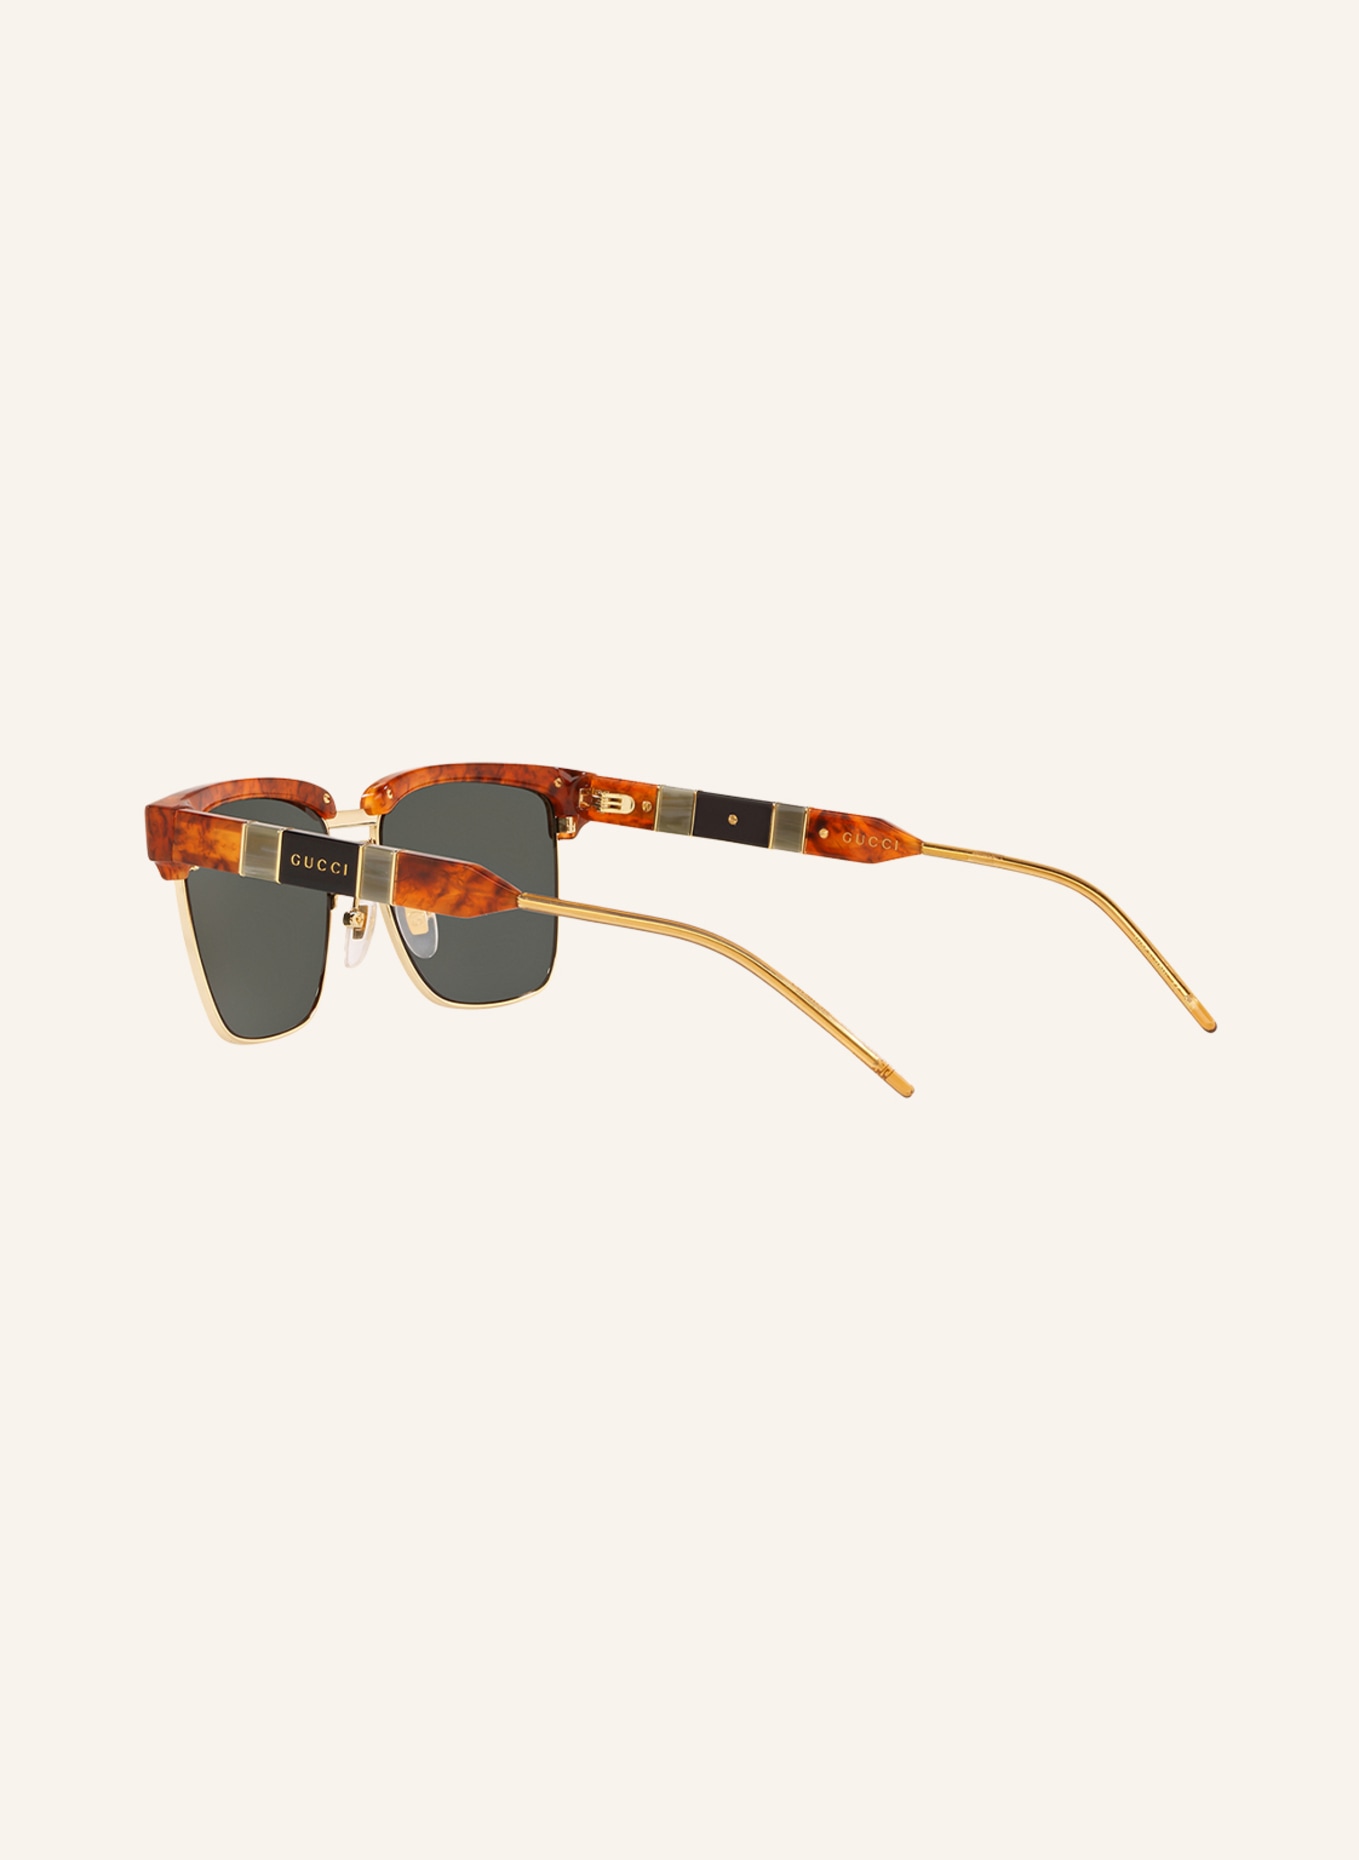 GUCCI Sunglasses GG0603S, Color: 4402J1 - HAVANA/GOLD/DARK GRAY (Image 4)